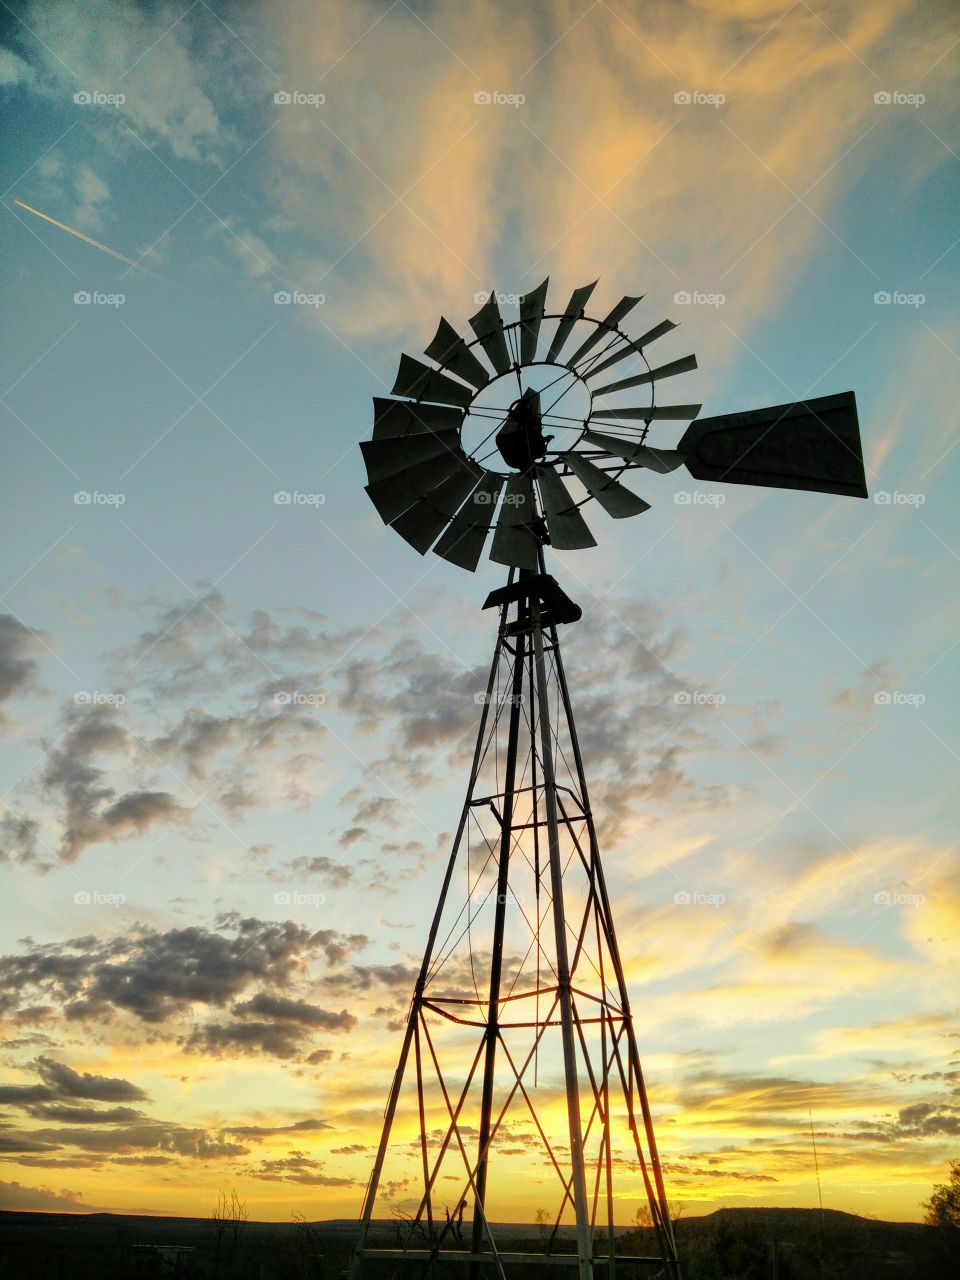 illuminated windmill